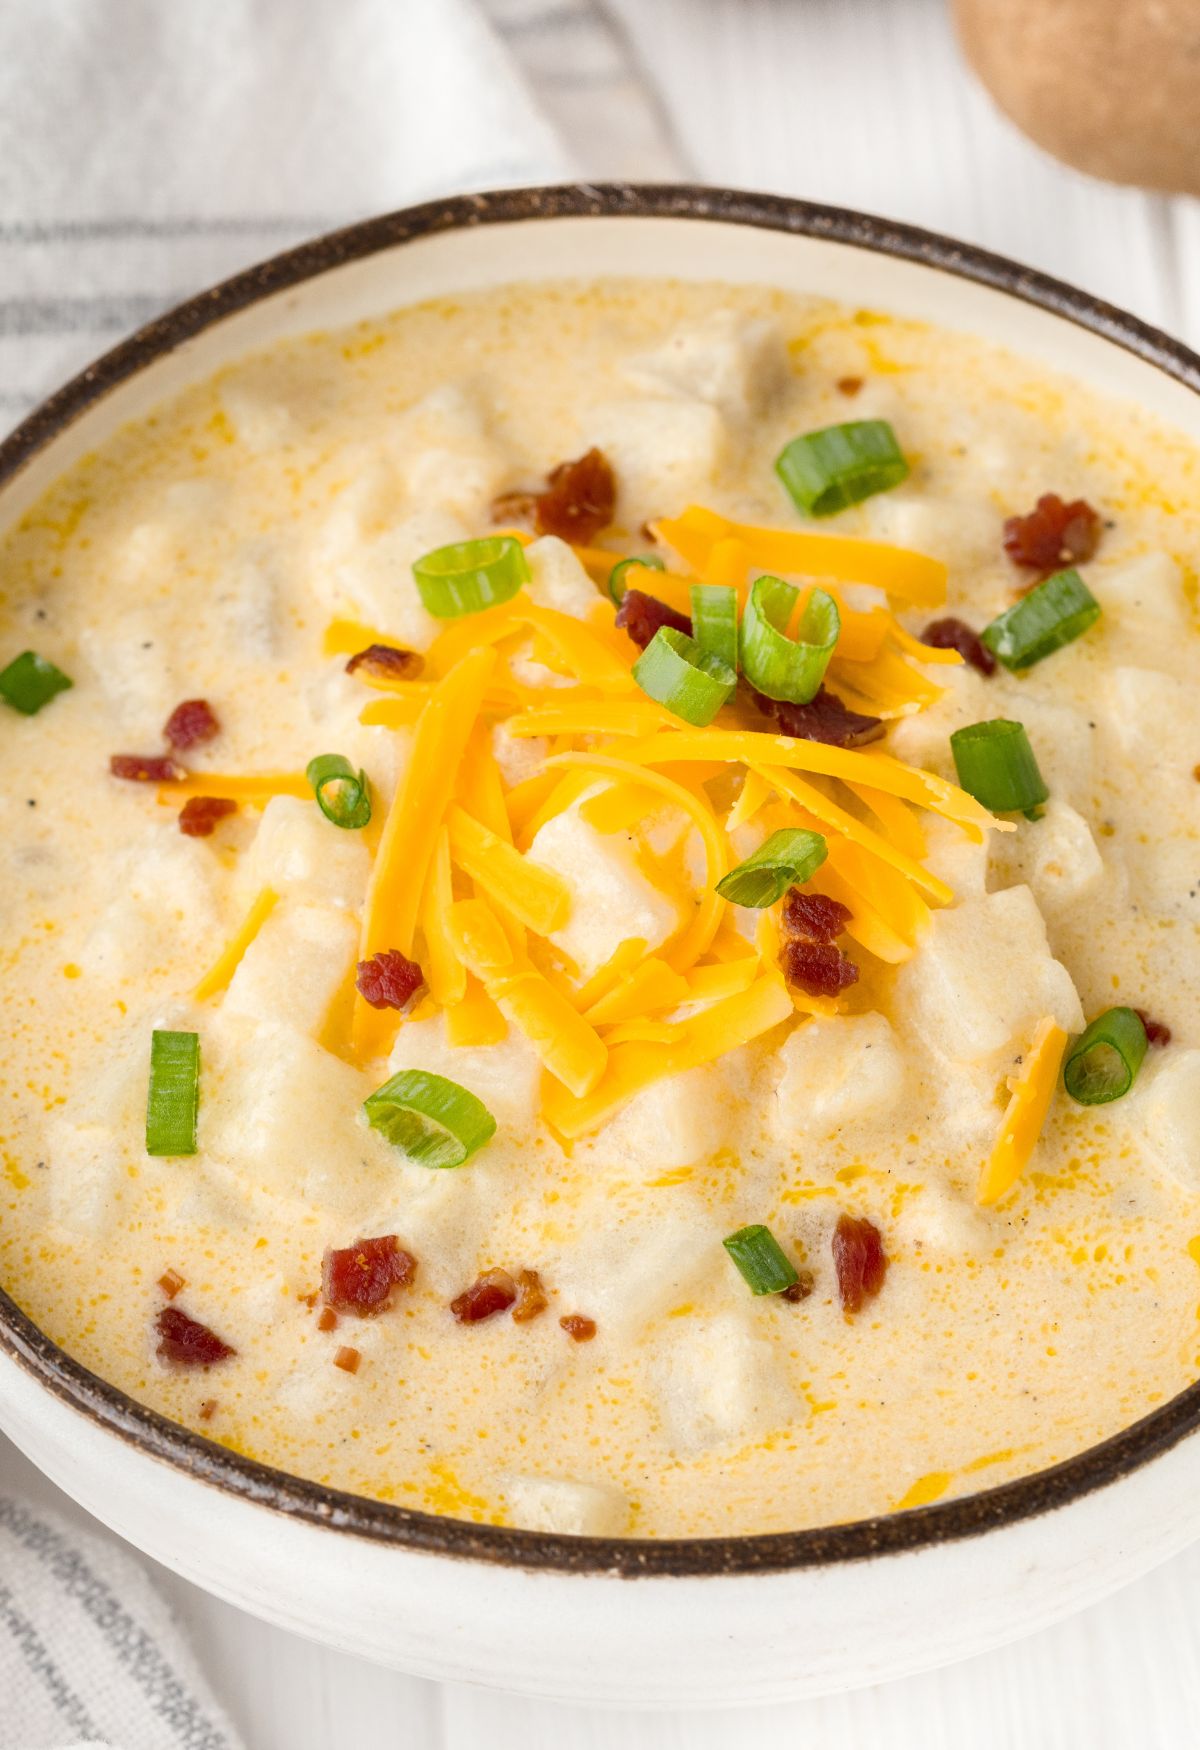 Cheesy Potato Soup (Stove Top Recipe) - Recipes That Crock!